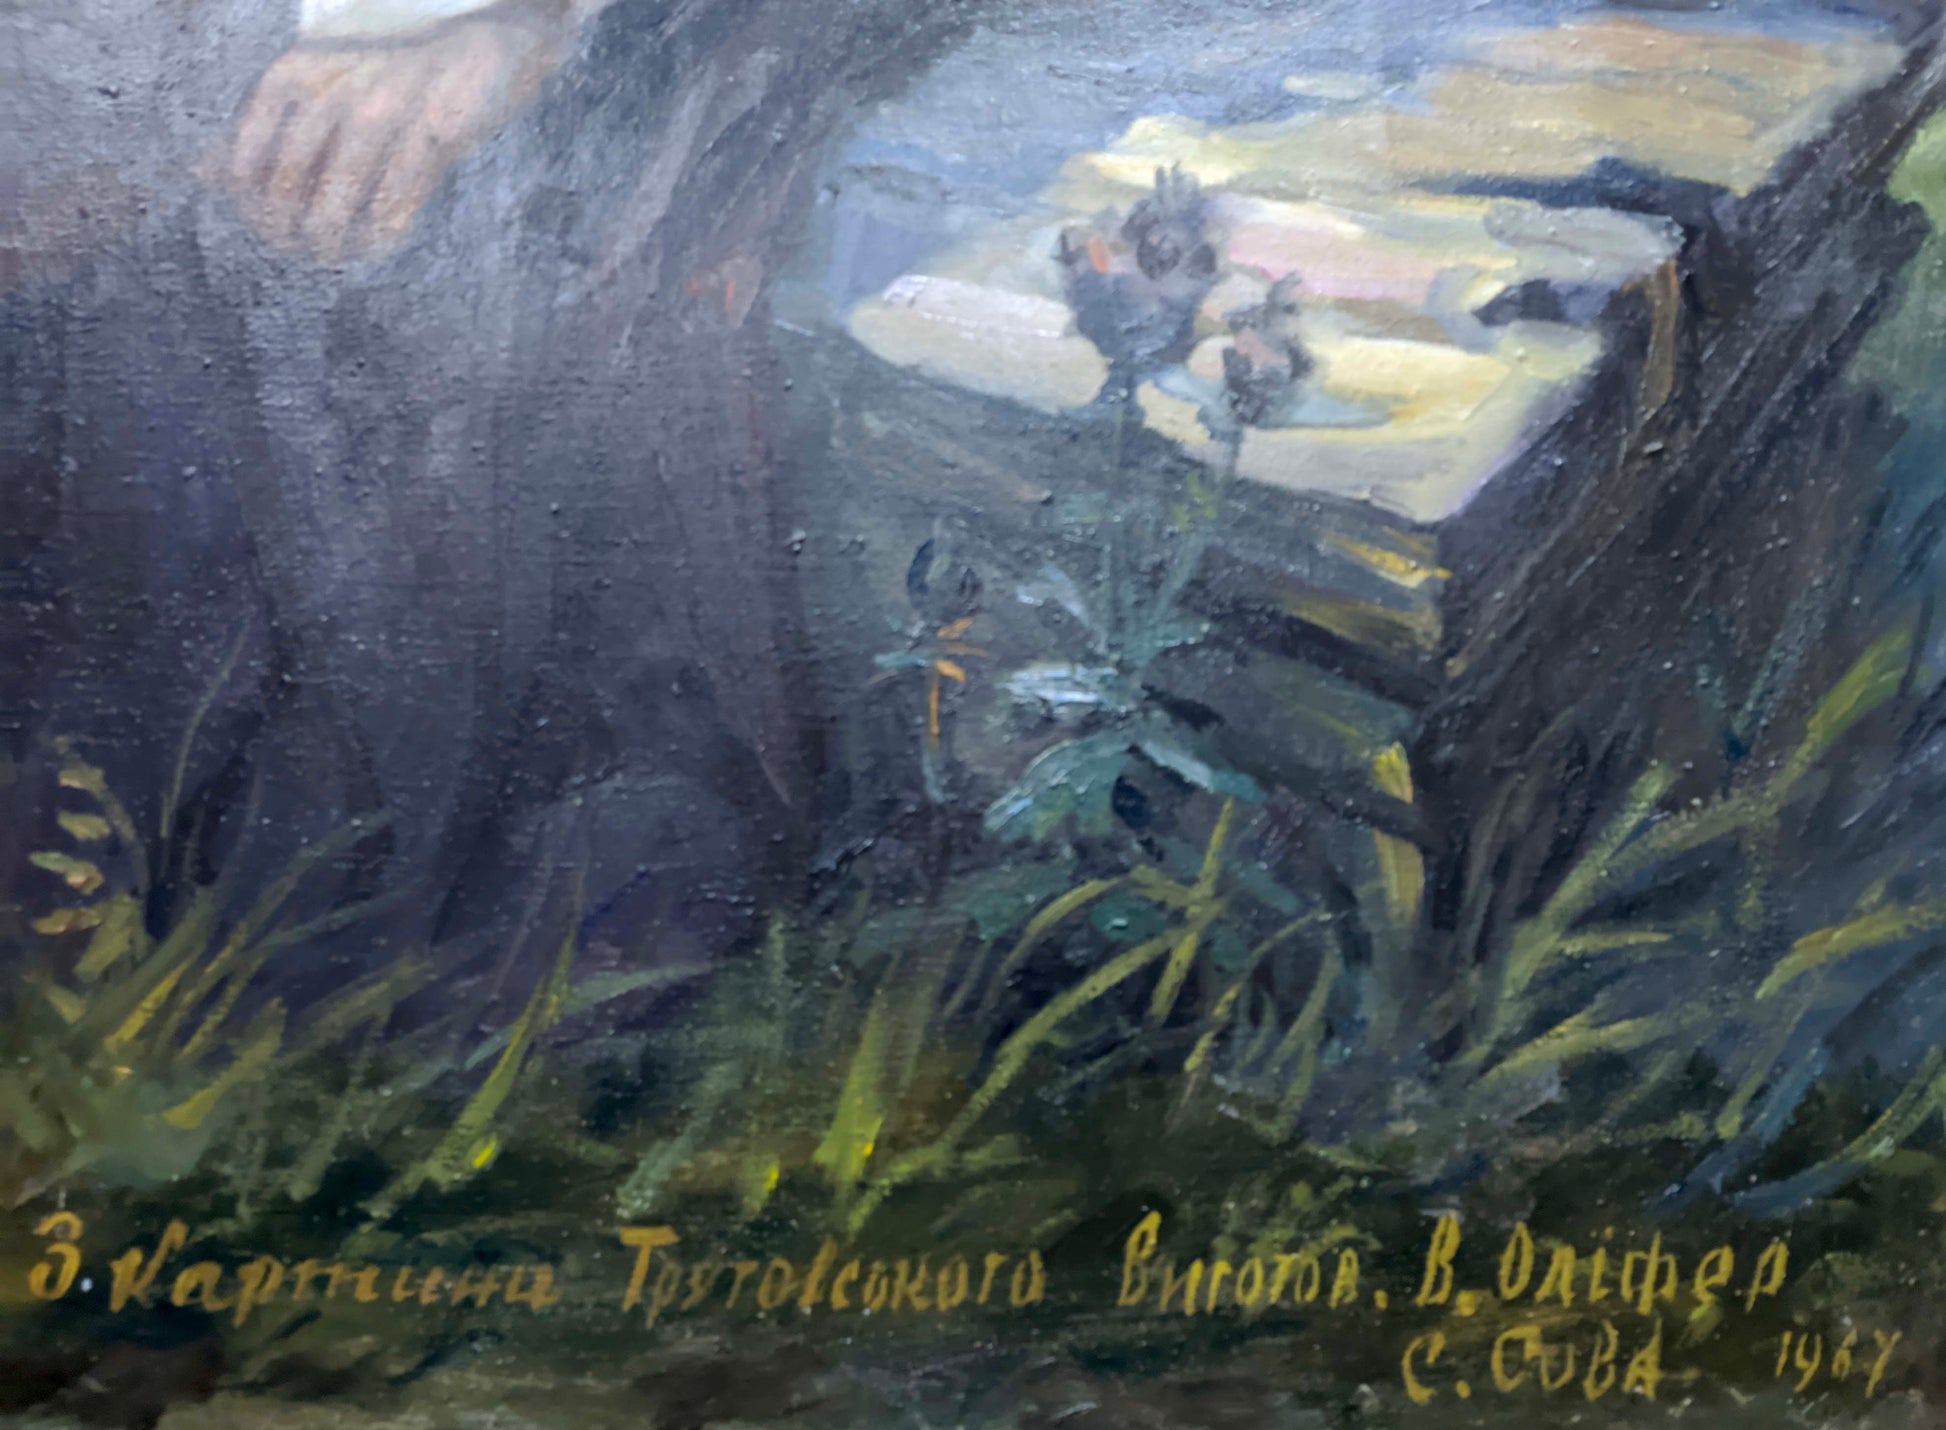 Shevchenko depicted in an oil artwork